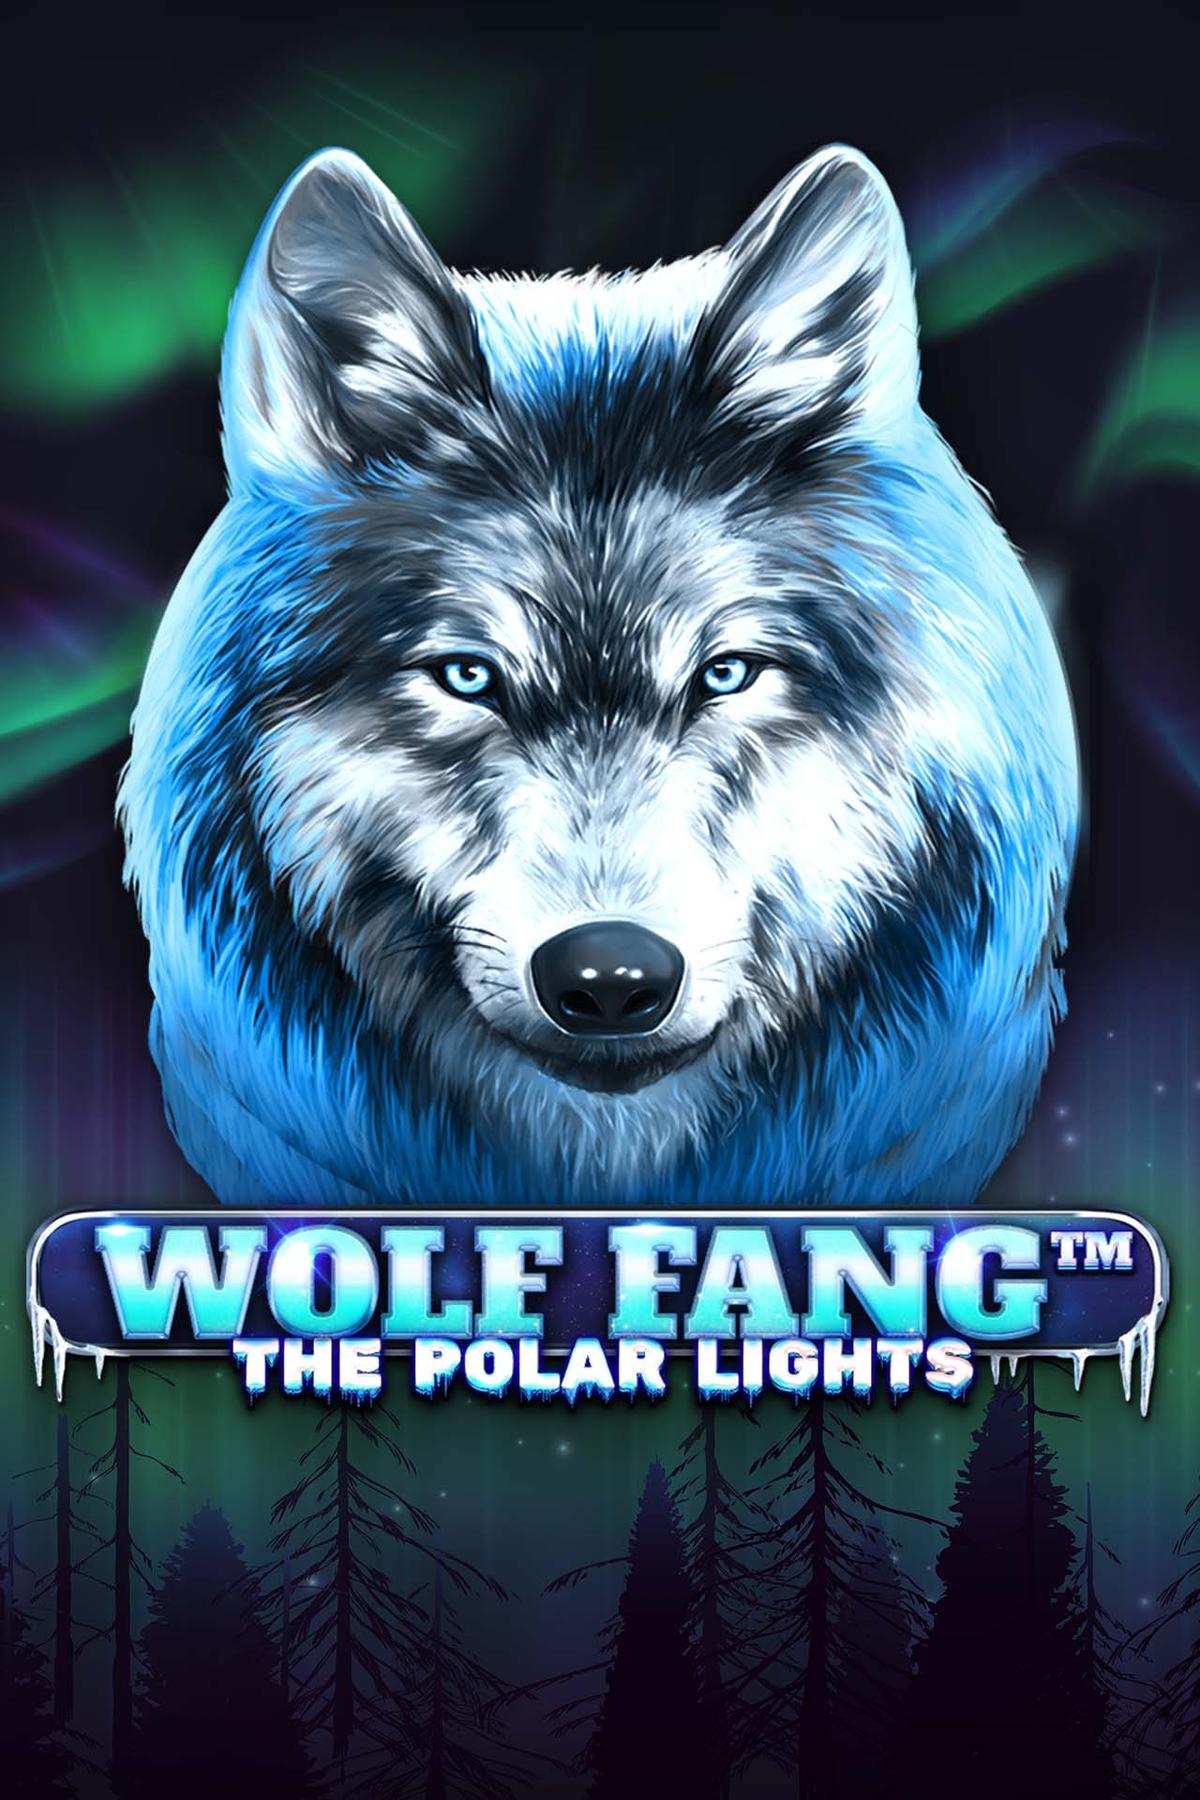 Wolf Fang - The Polar Lights